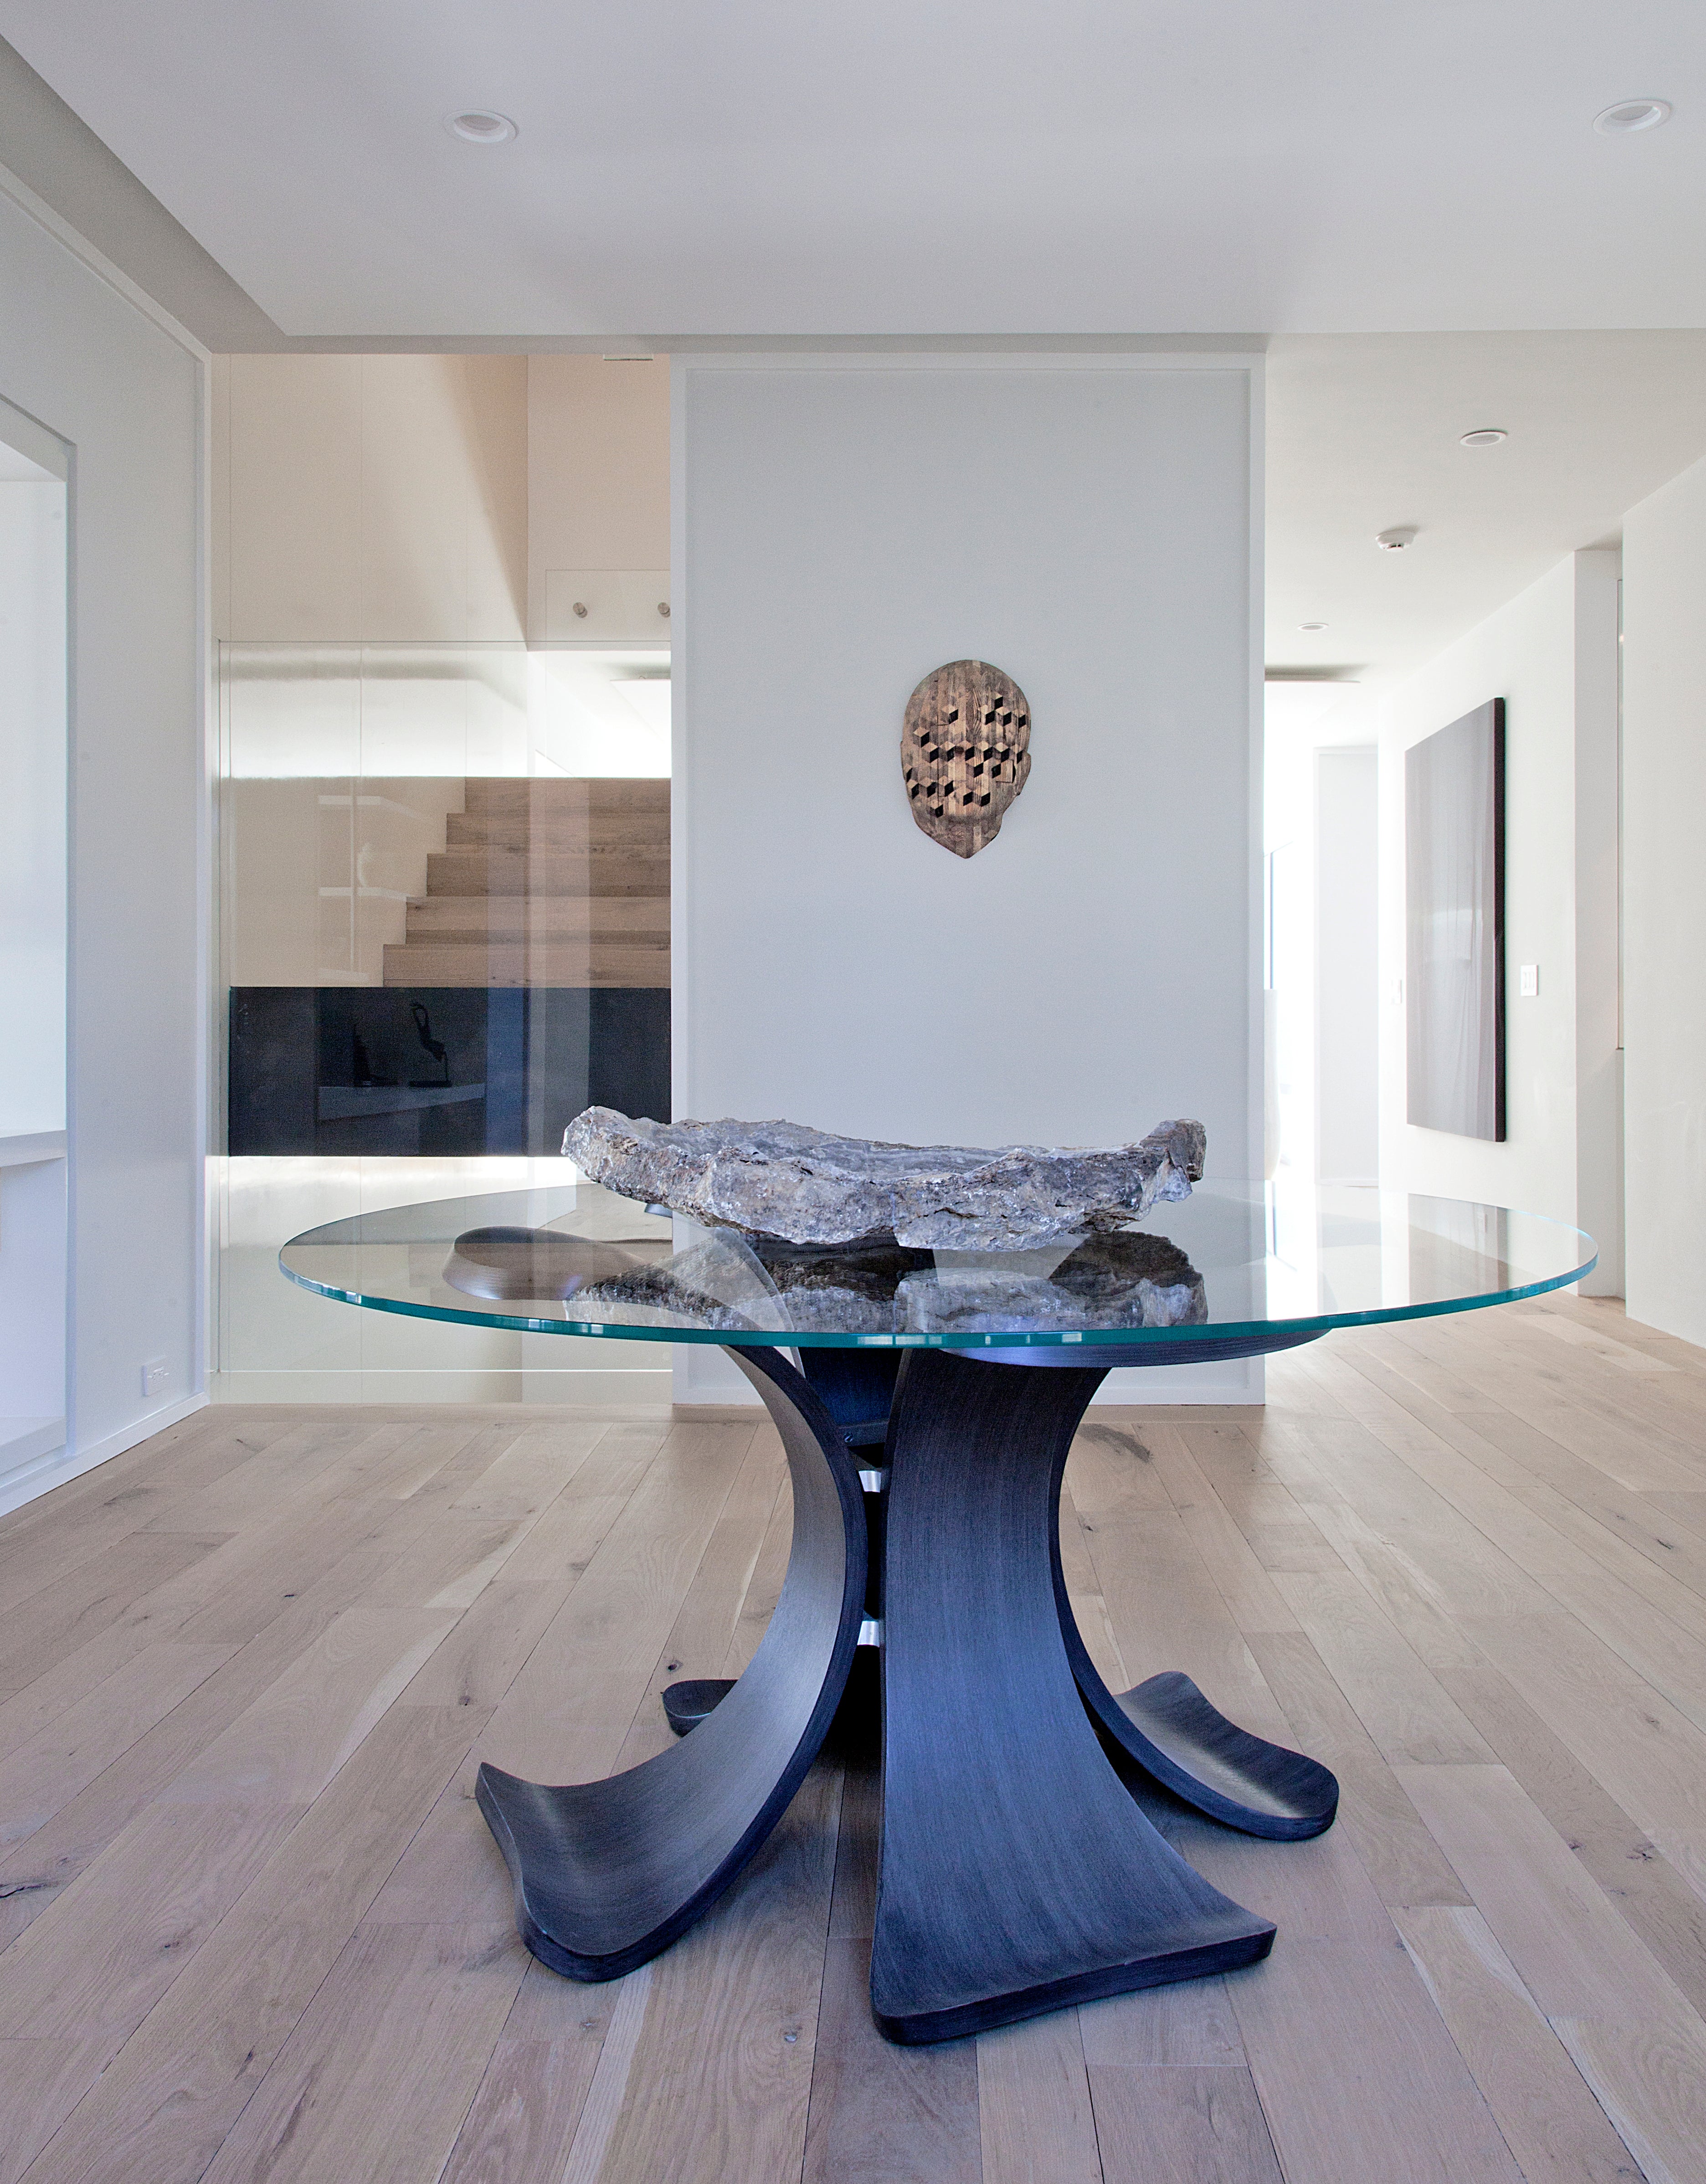 Cette superbe table à manger en verre orchidée avec une base en chêne noirci est un ajout remarquable à votre maison, offrant beaucoup de caractère et d'attrait visuel. Avec ses 52 pouces de diamètre, la table peut accueillir confortablement quatre